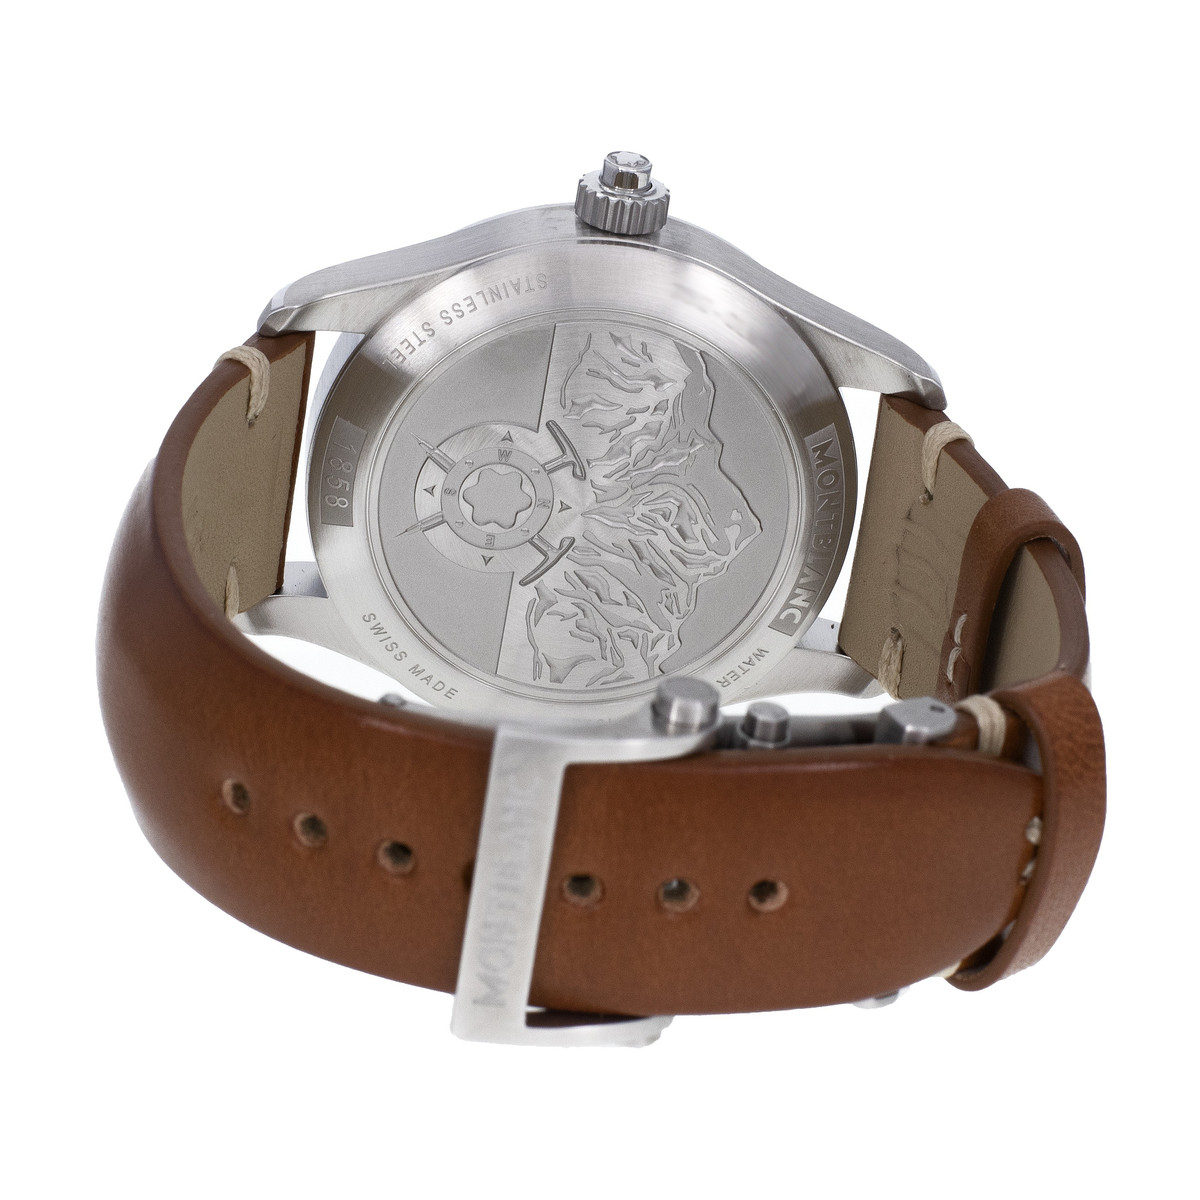 Montre d'occasion Montblanc 1858 homme chronographe automatique acier bracelet cuir marron - vue 3